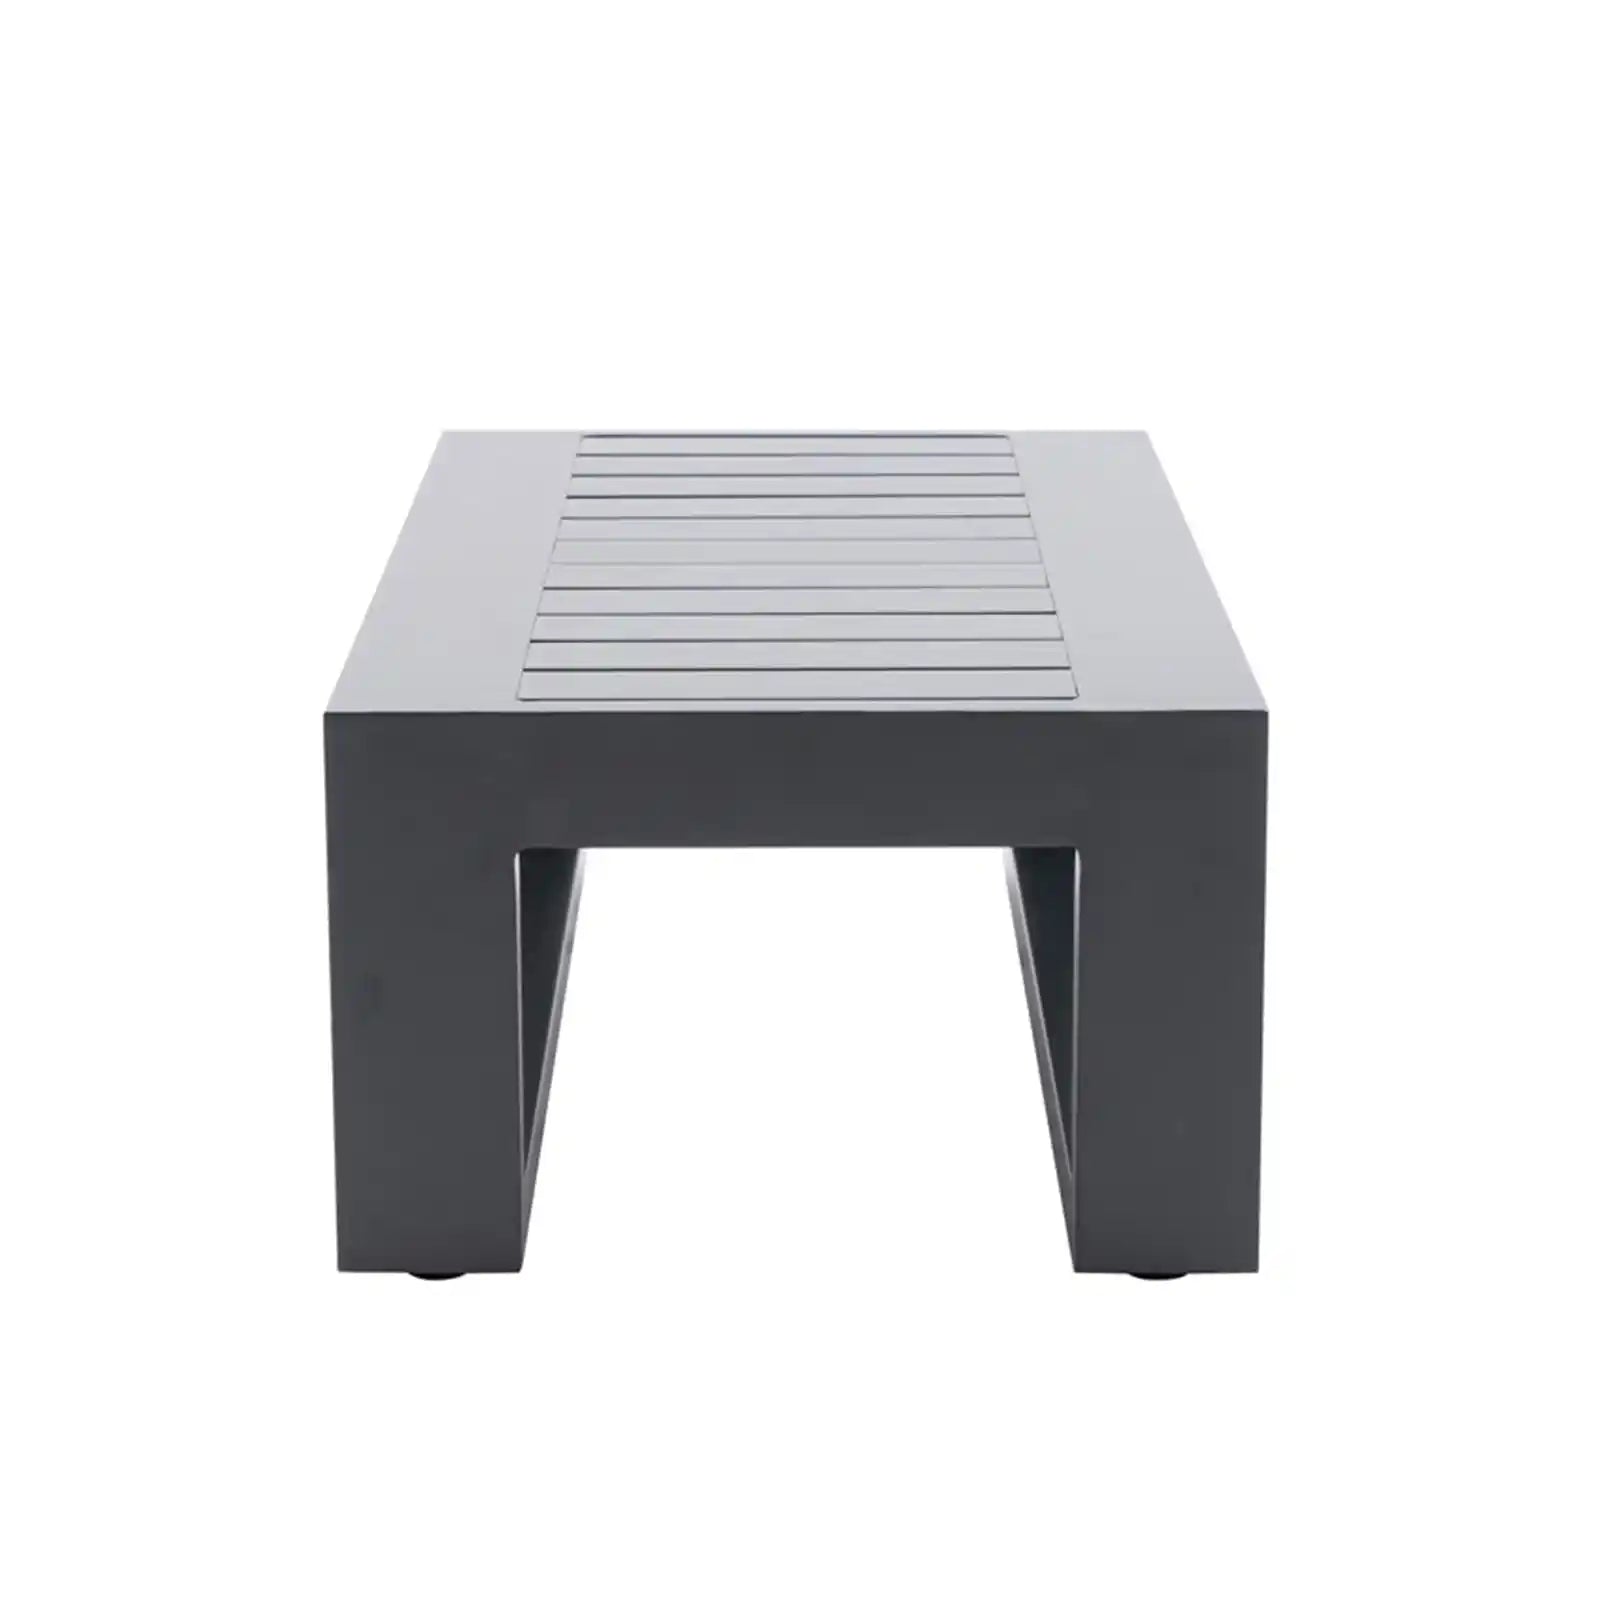 Mesa auxiliar para patio, mesas auxiliares de aluminio para exteriores, mesa de centro rectangular pequeña, muebles de patio, gris 